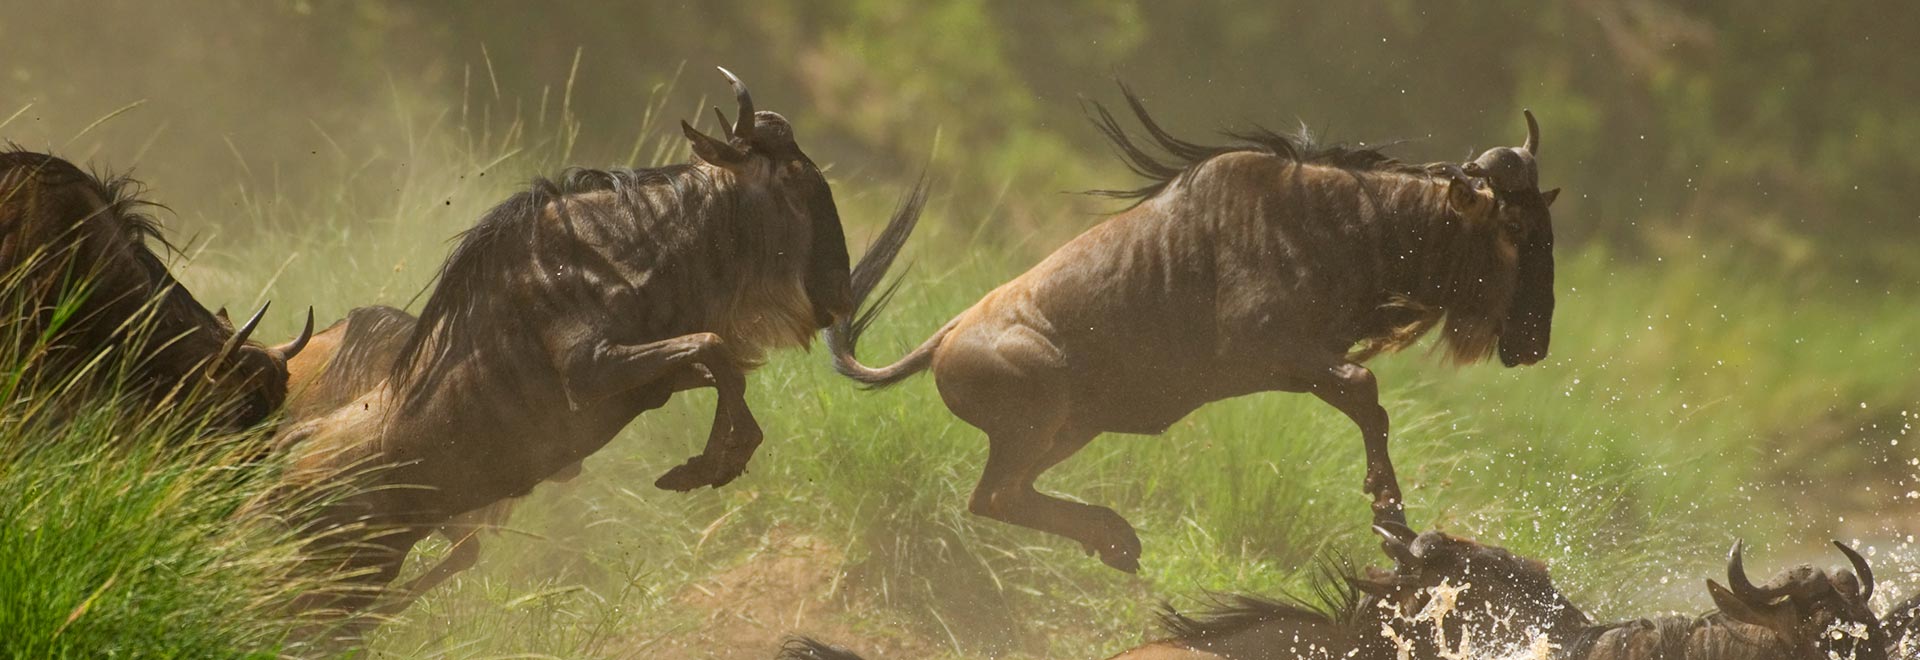 Africa Signature Great Migration Safari Wildebeest Crossing MH